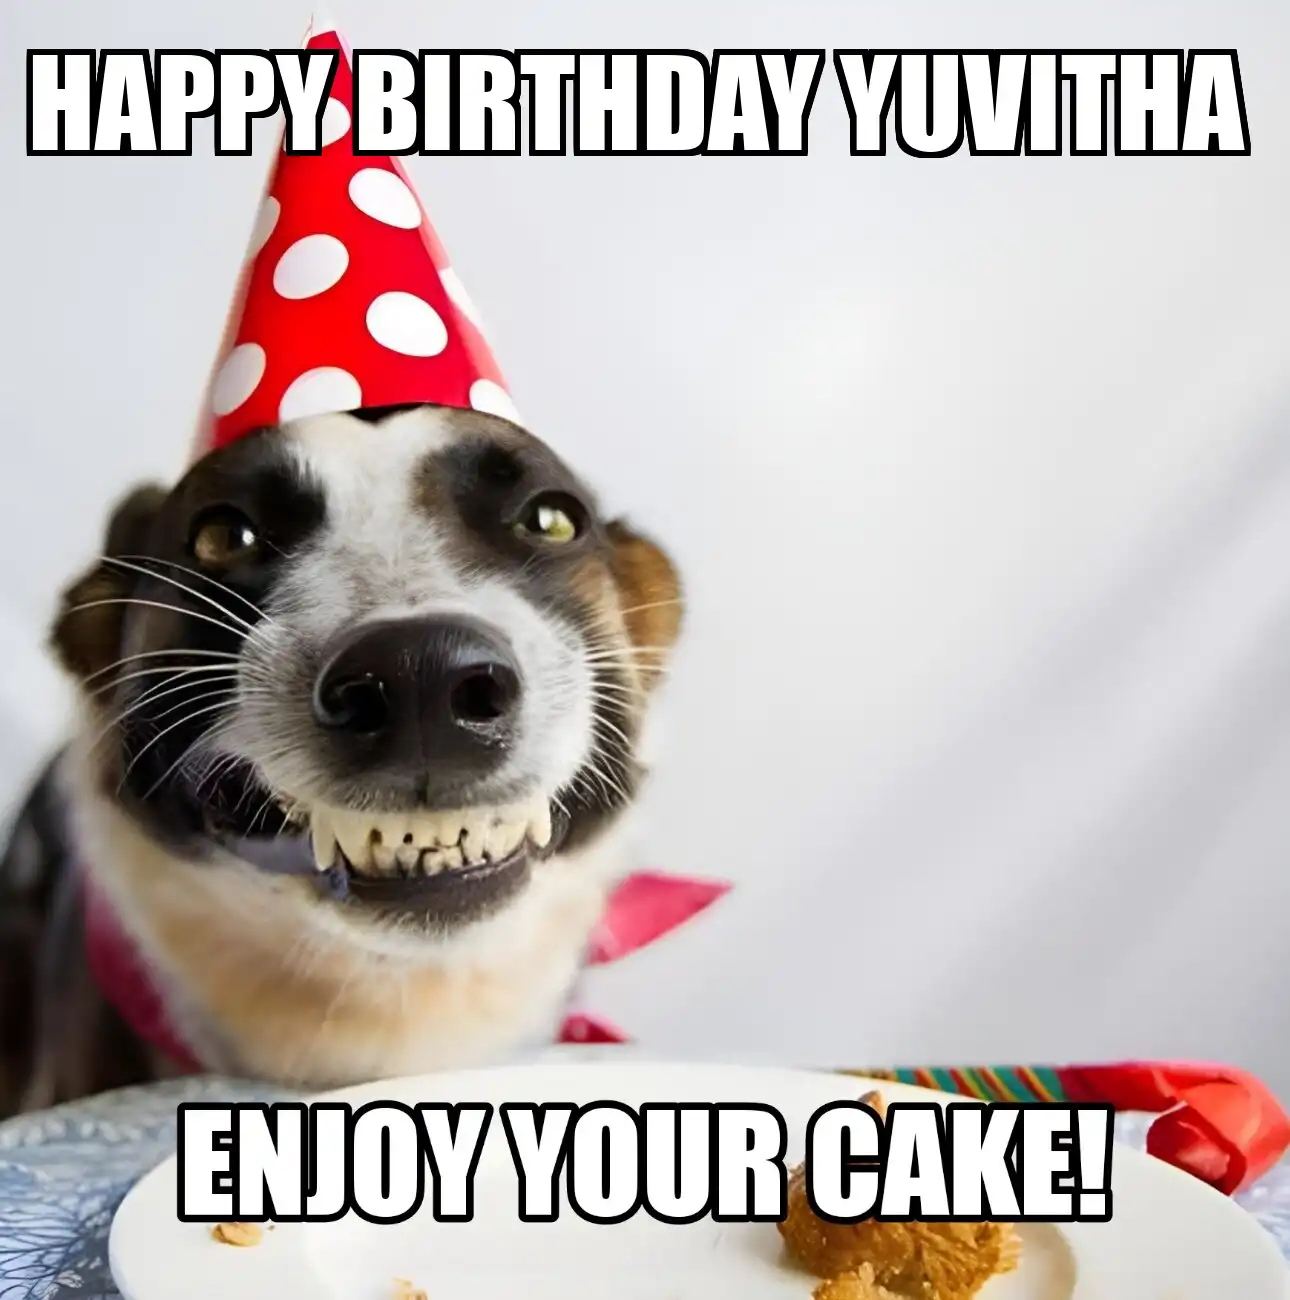 Happy Birthday Yuvitha Enjoy Your Cake Dog Meme